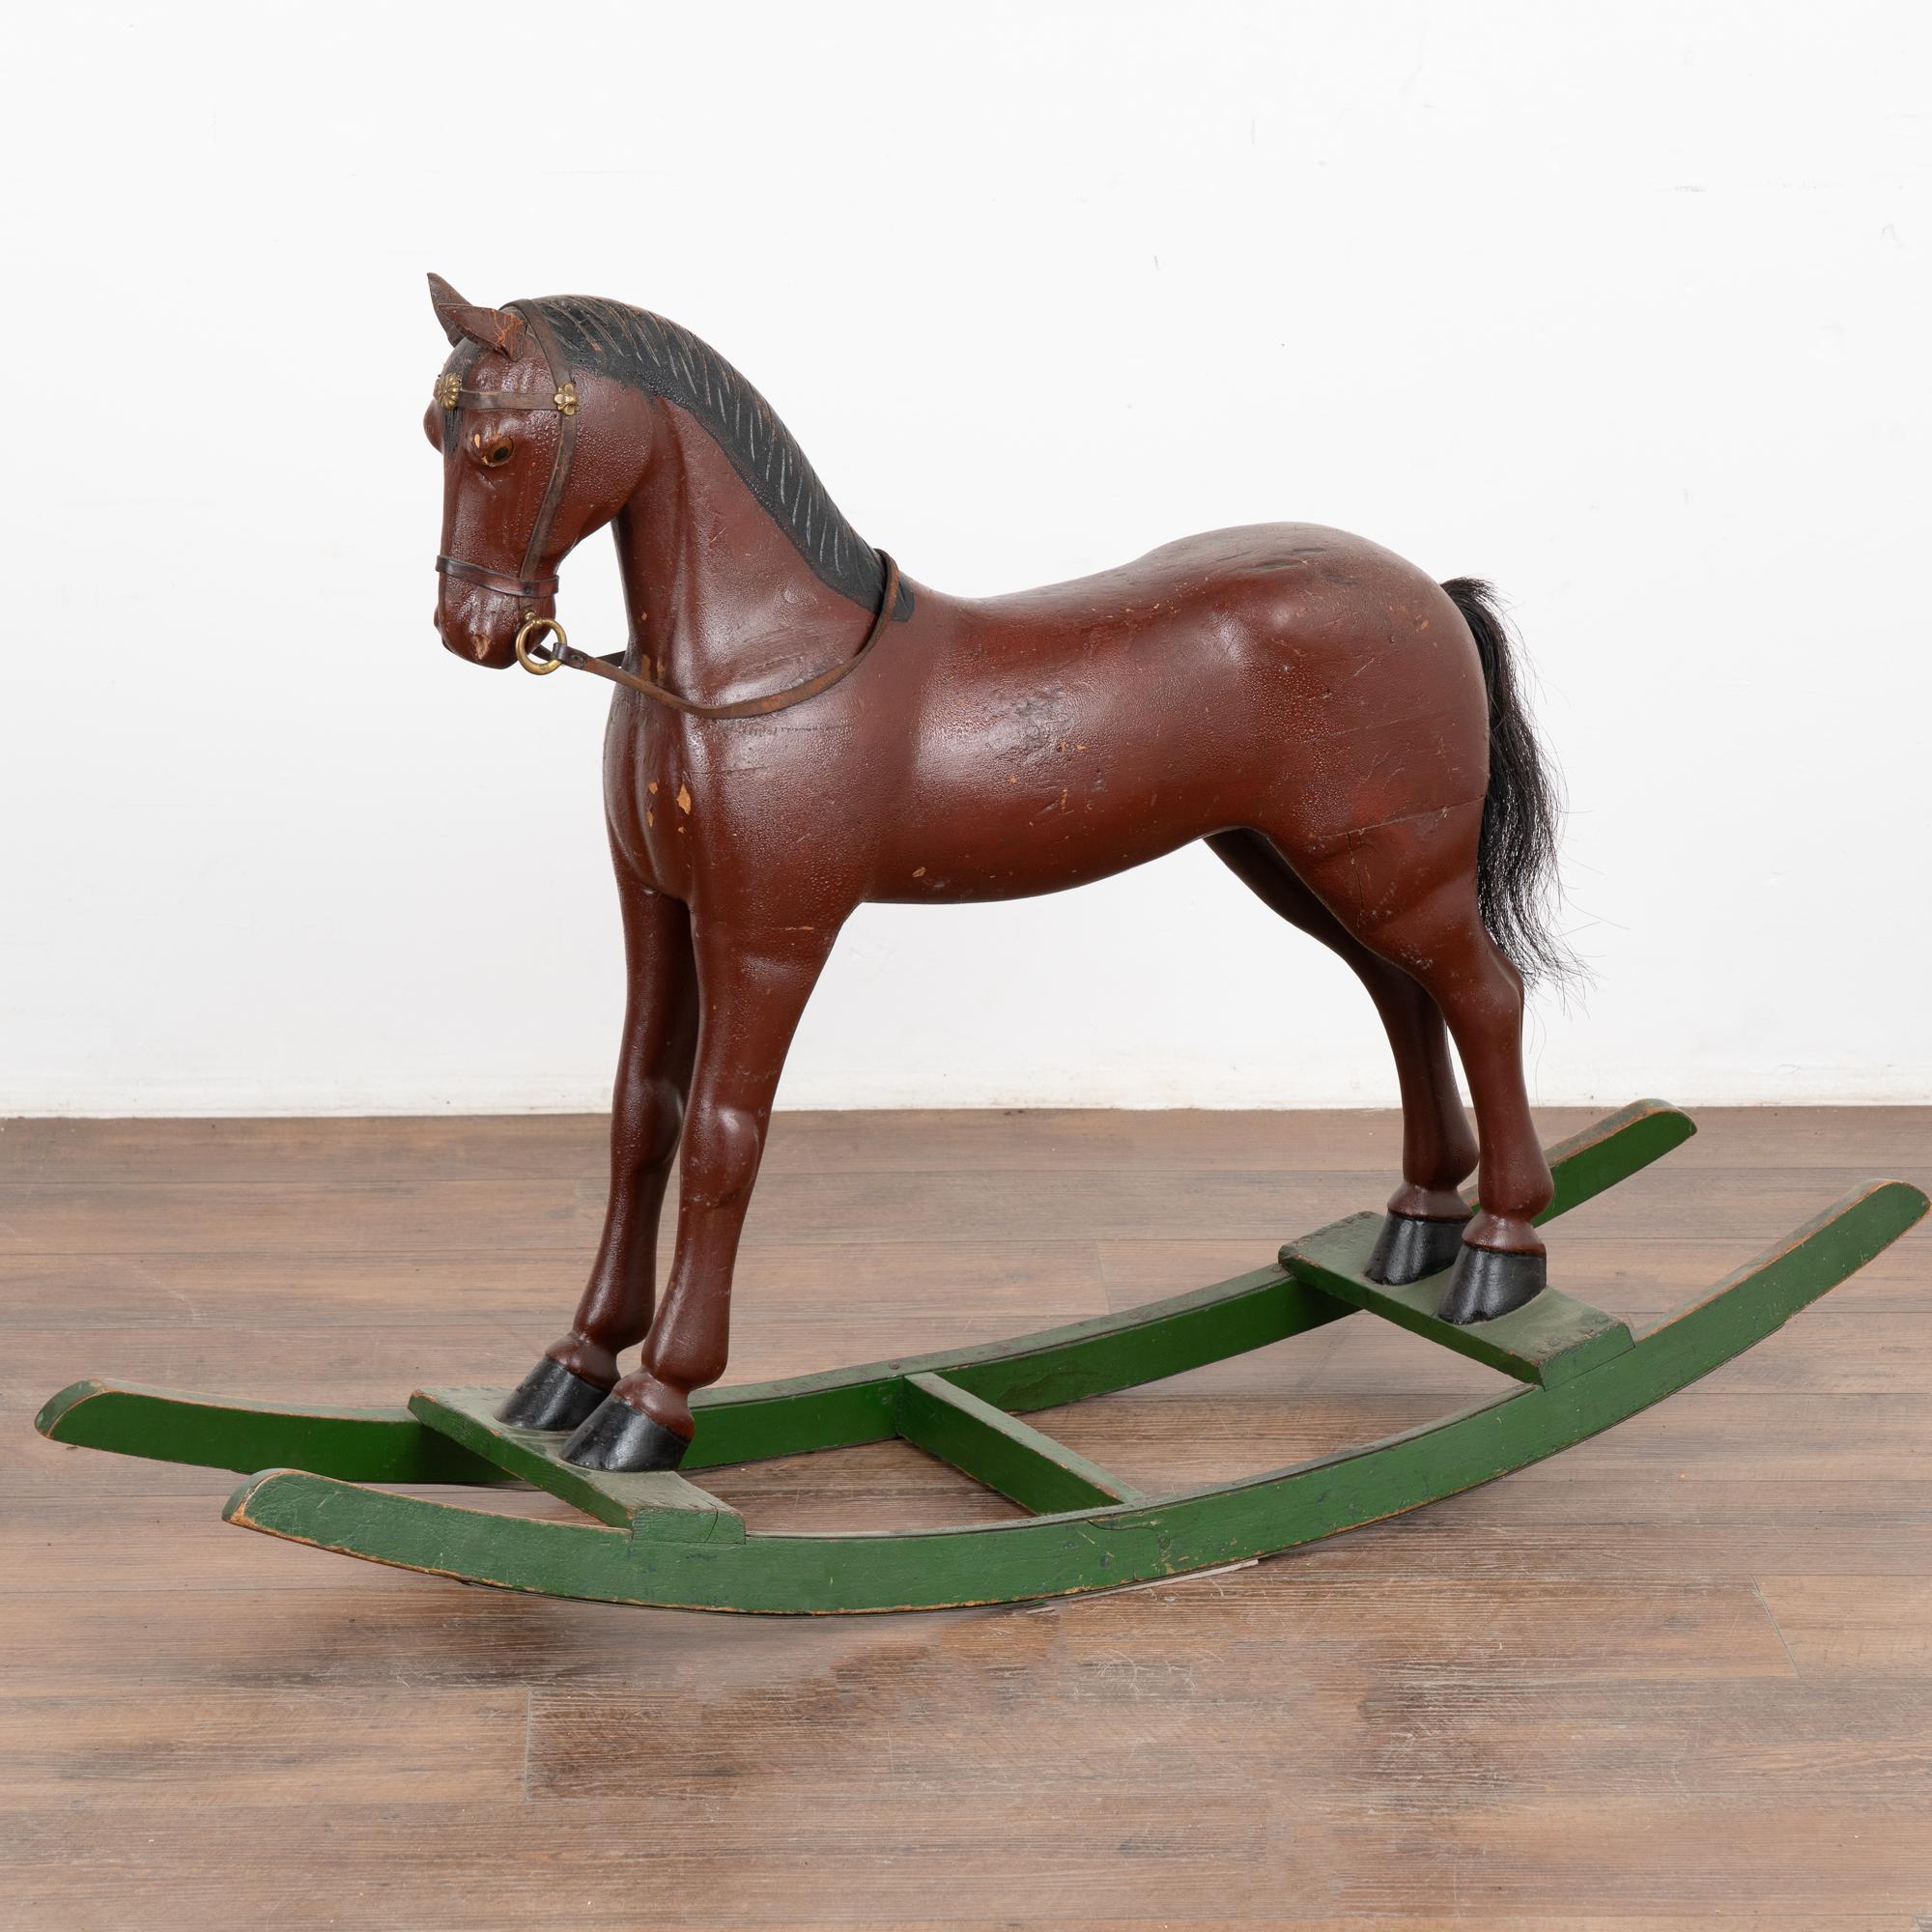 C'est l'aspect usé qui fait tout le charme de ce cheval à bascule original, peint et sculpté, originaire de Suède.
La peinture marron/brique a subi des dégradations (il en manque, voir photo de la façade directe). Notez également les oreilles en